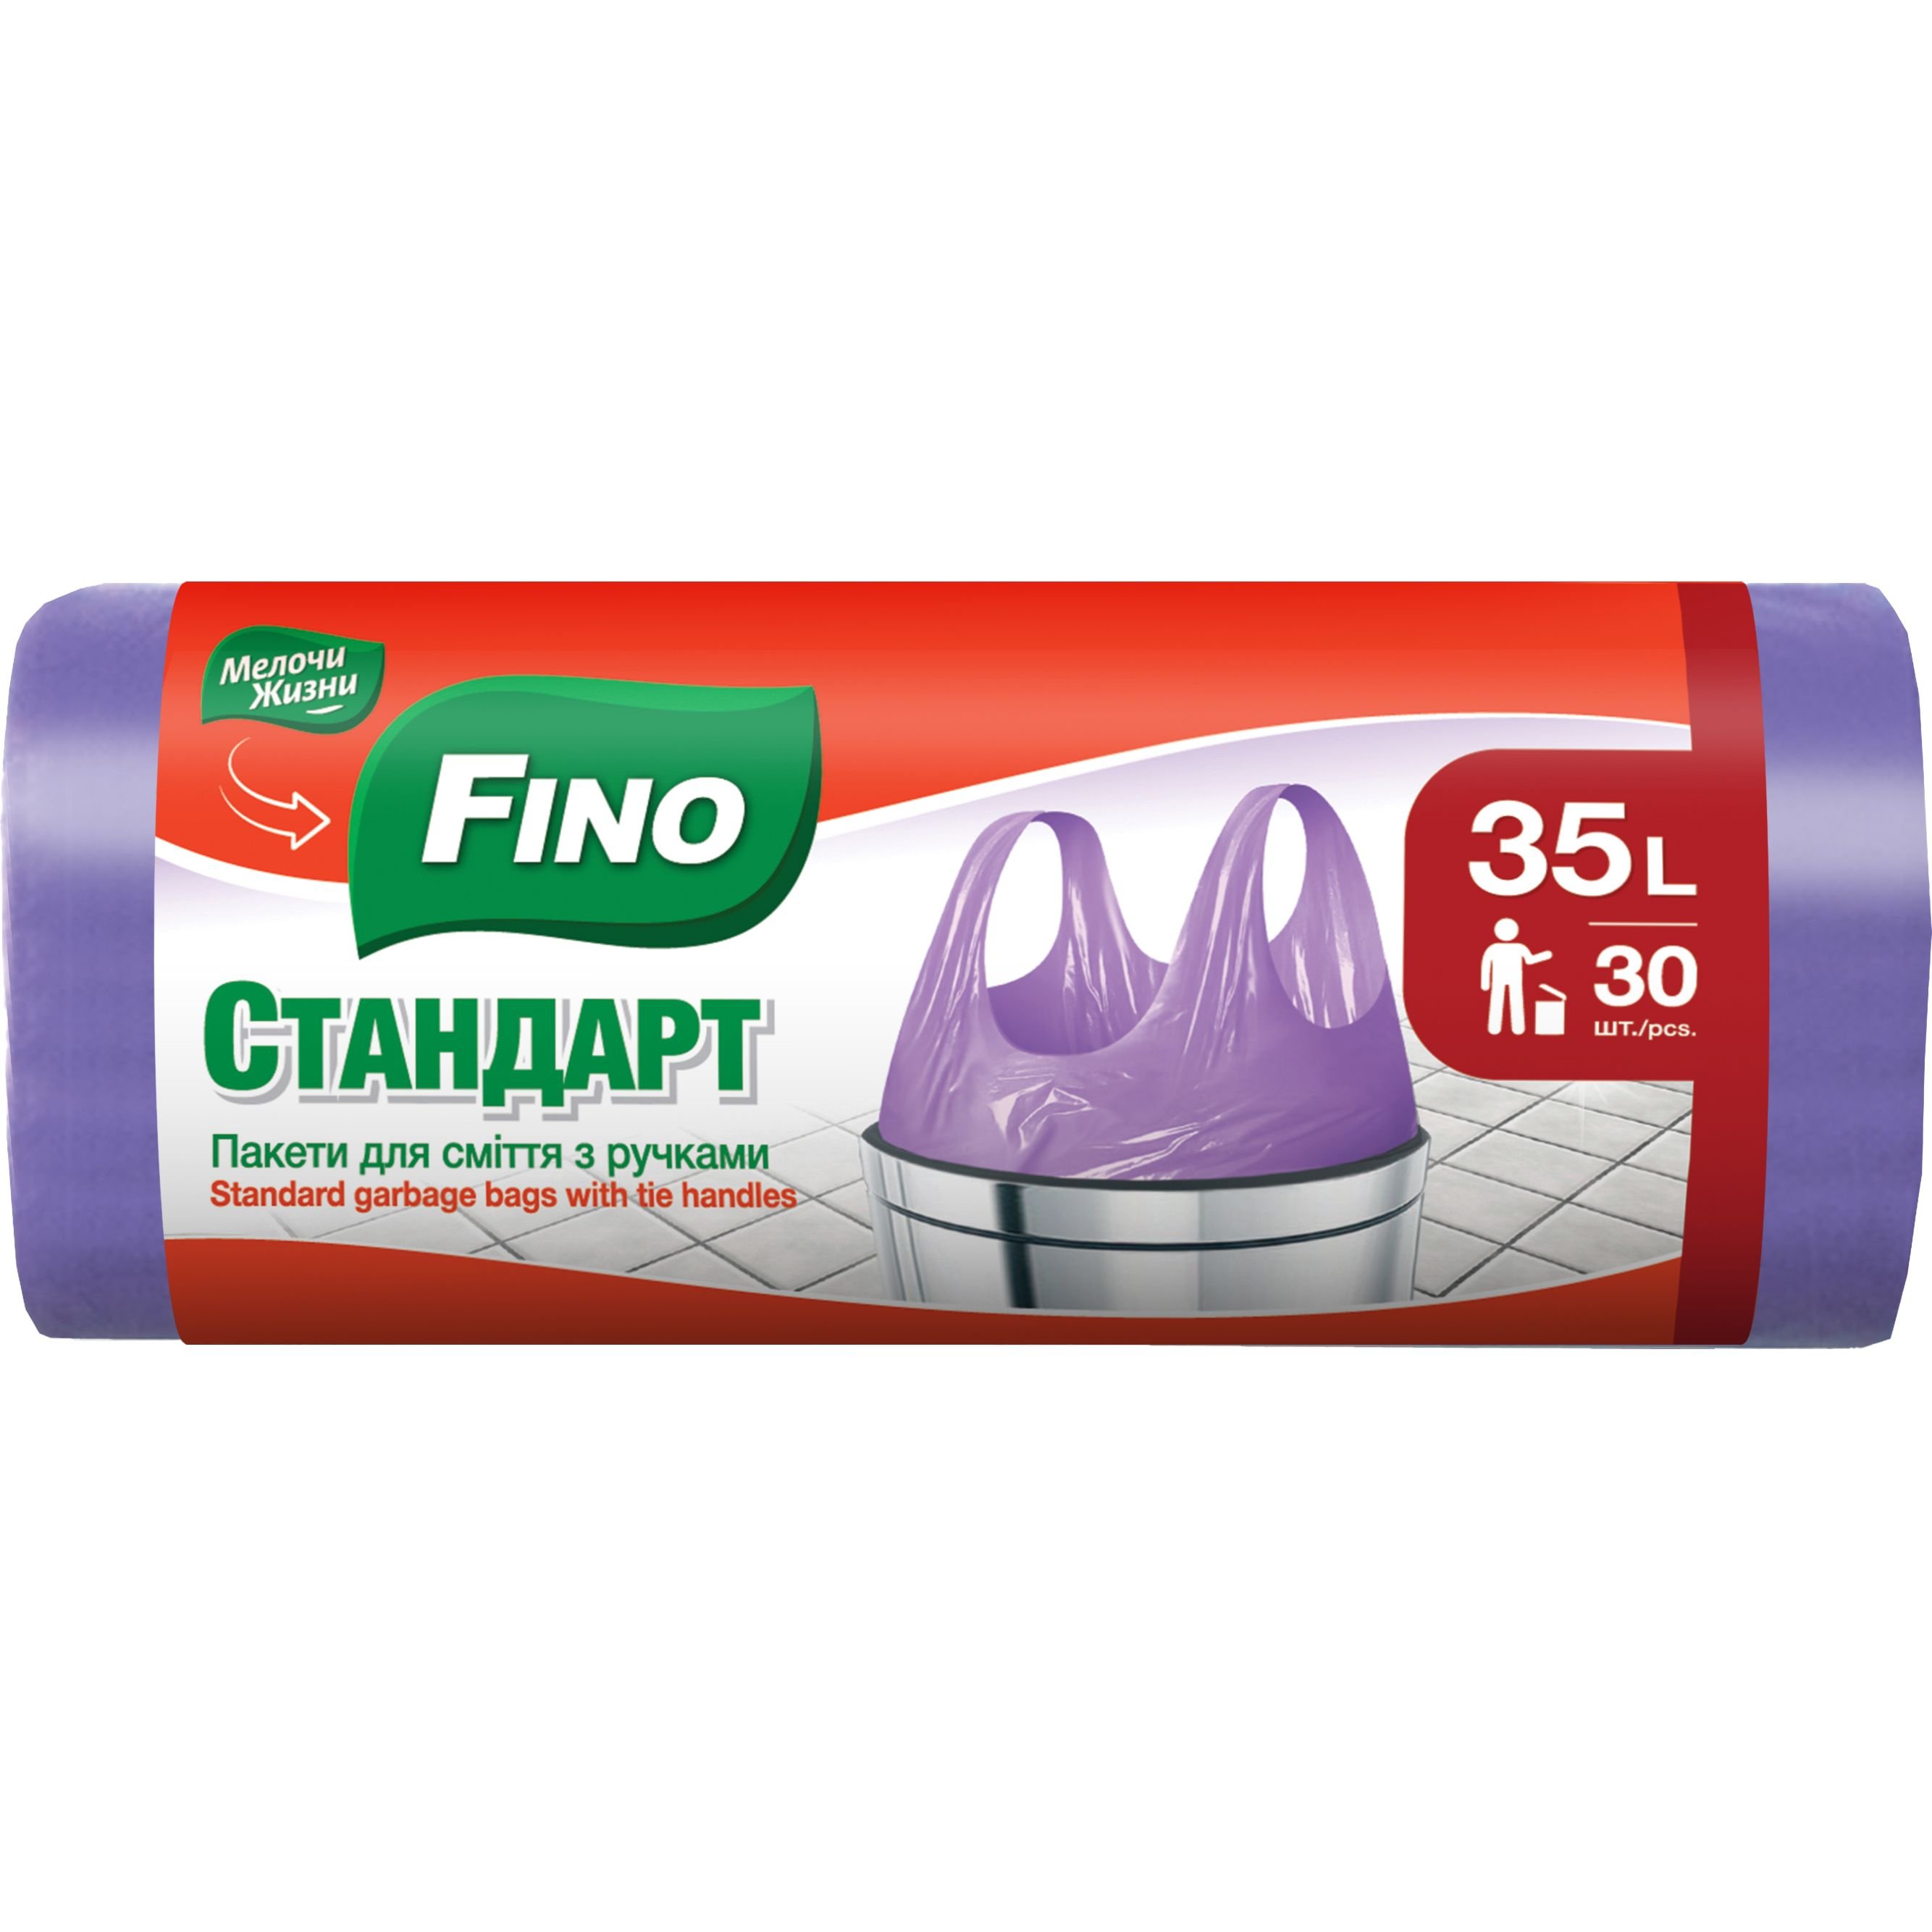 Пакети для сміття Fino Стандарт з ручками 35 л 30 шт. - фото 1